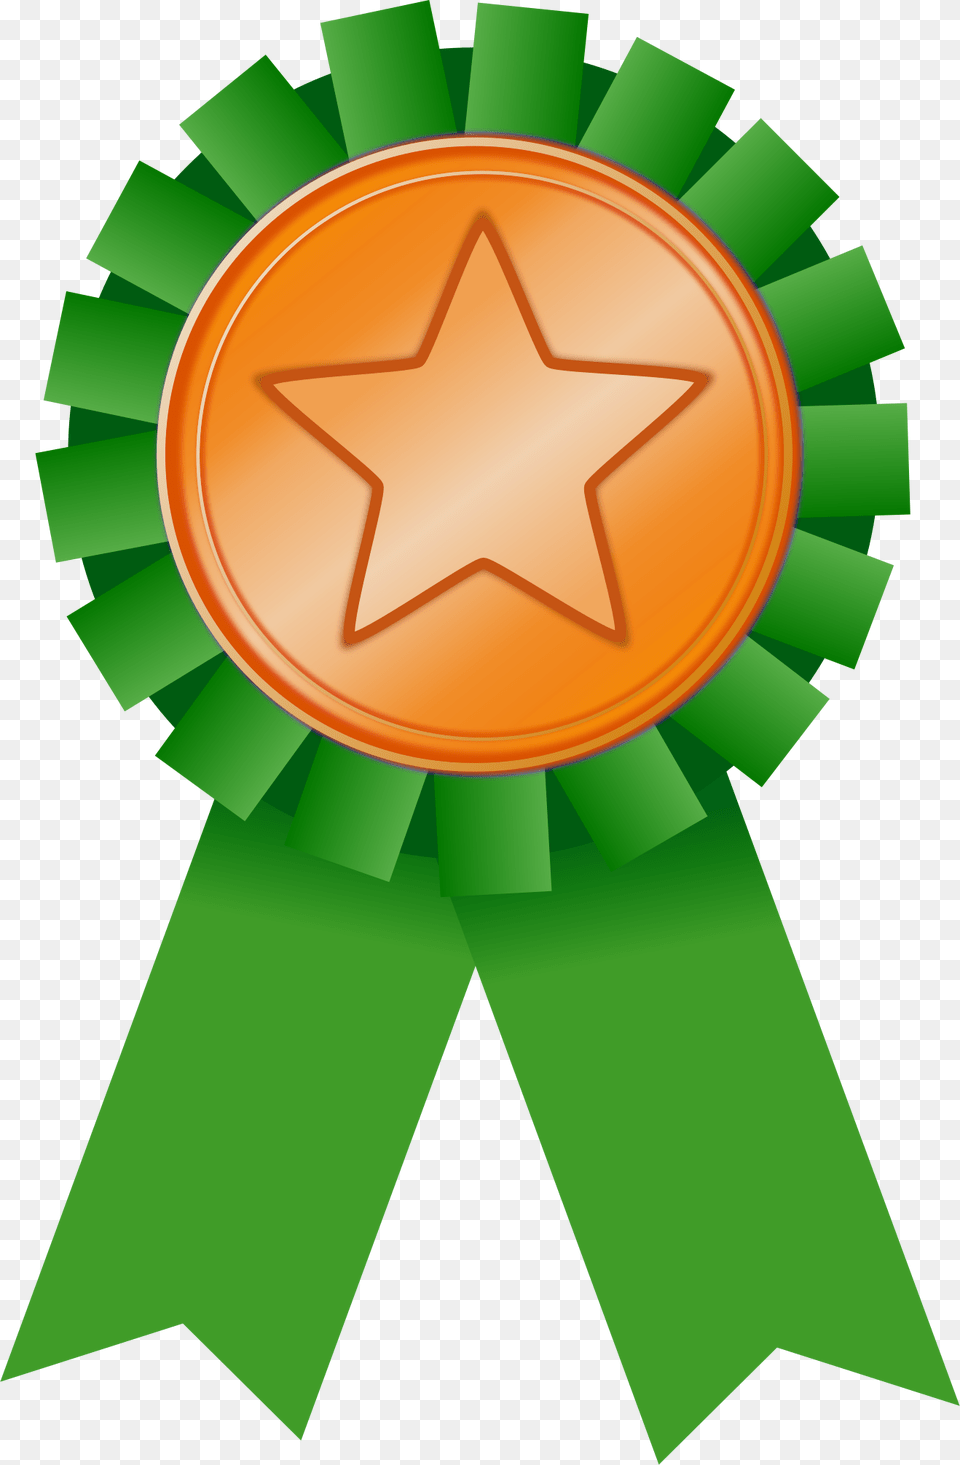 Bronze Silver And Gold Requirements Green Award Ribbon, Star Symbol, Symbol, Badge, Logo Png